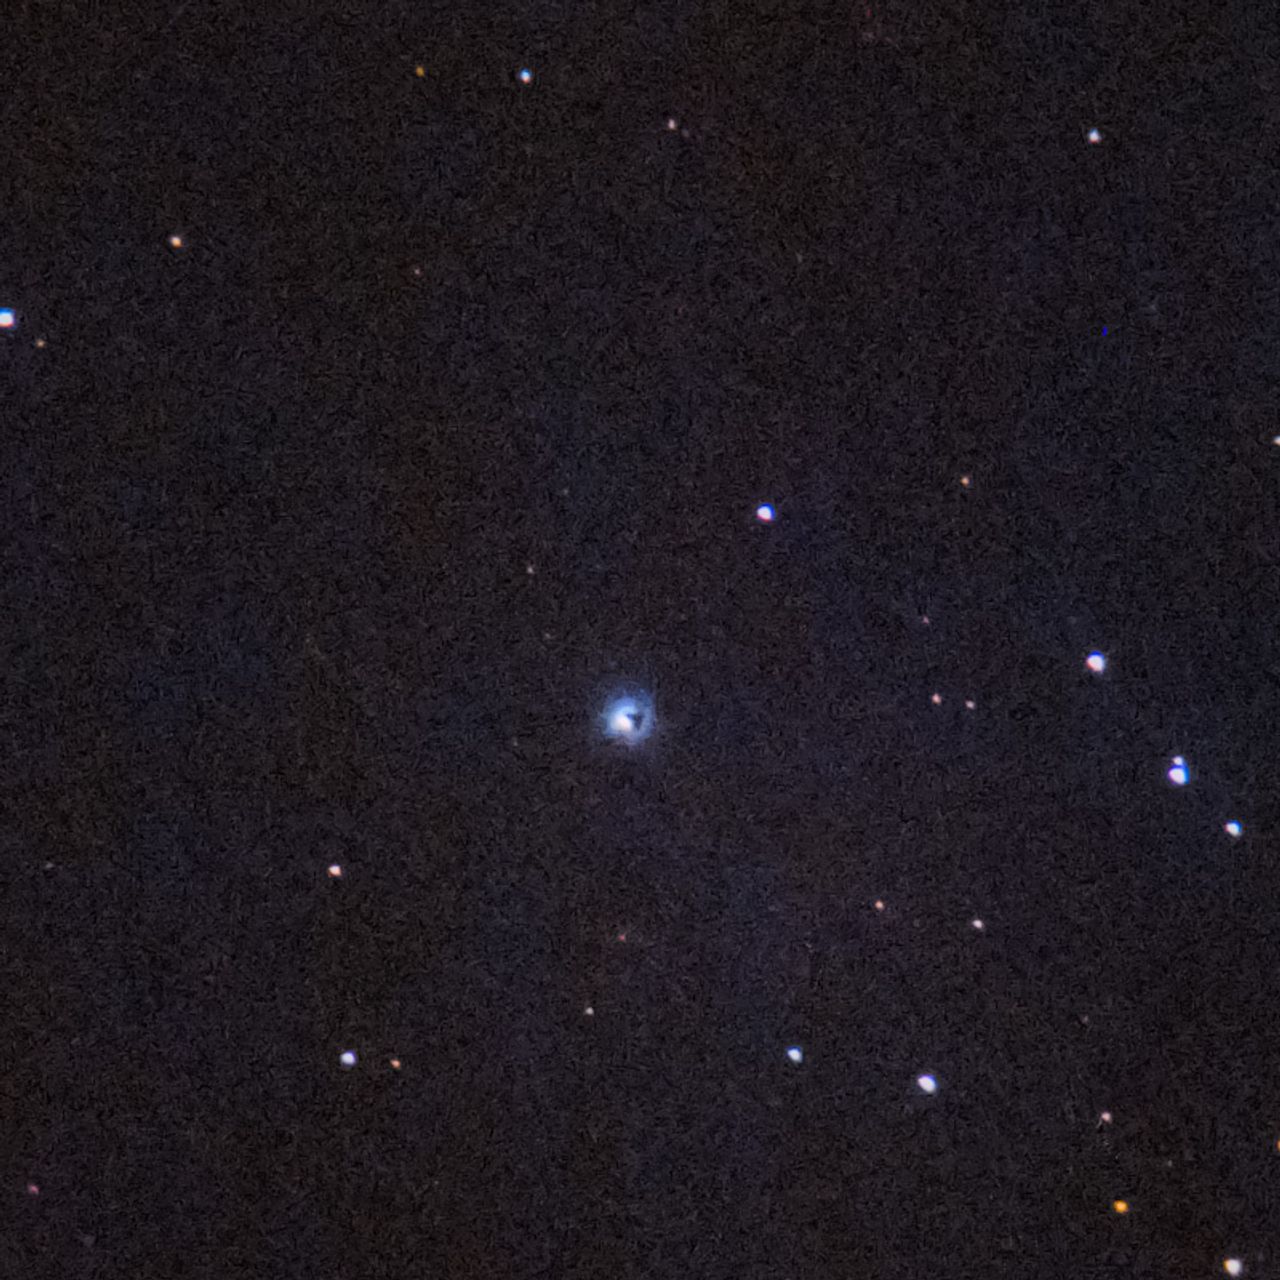 NGC1999